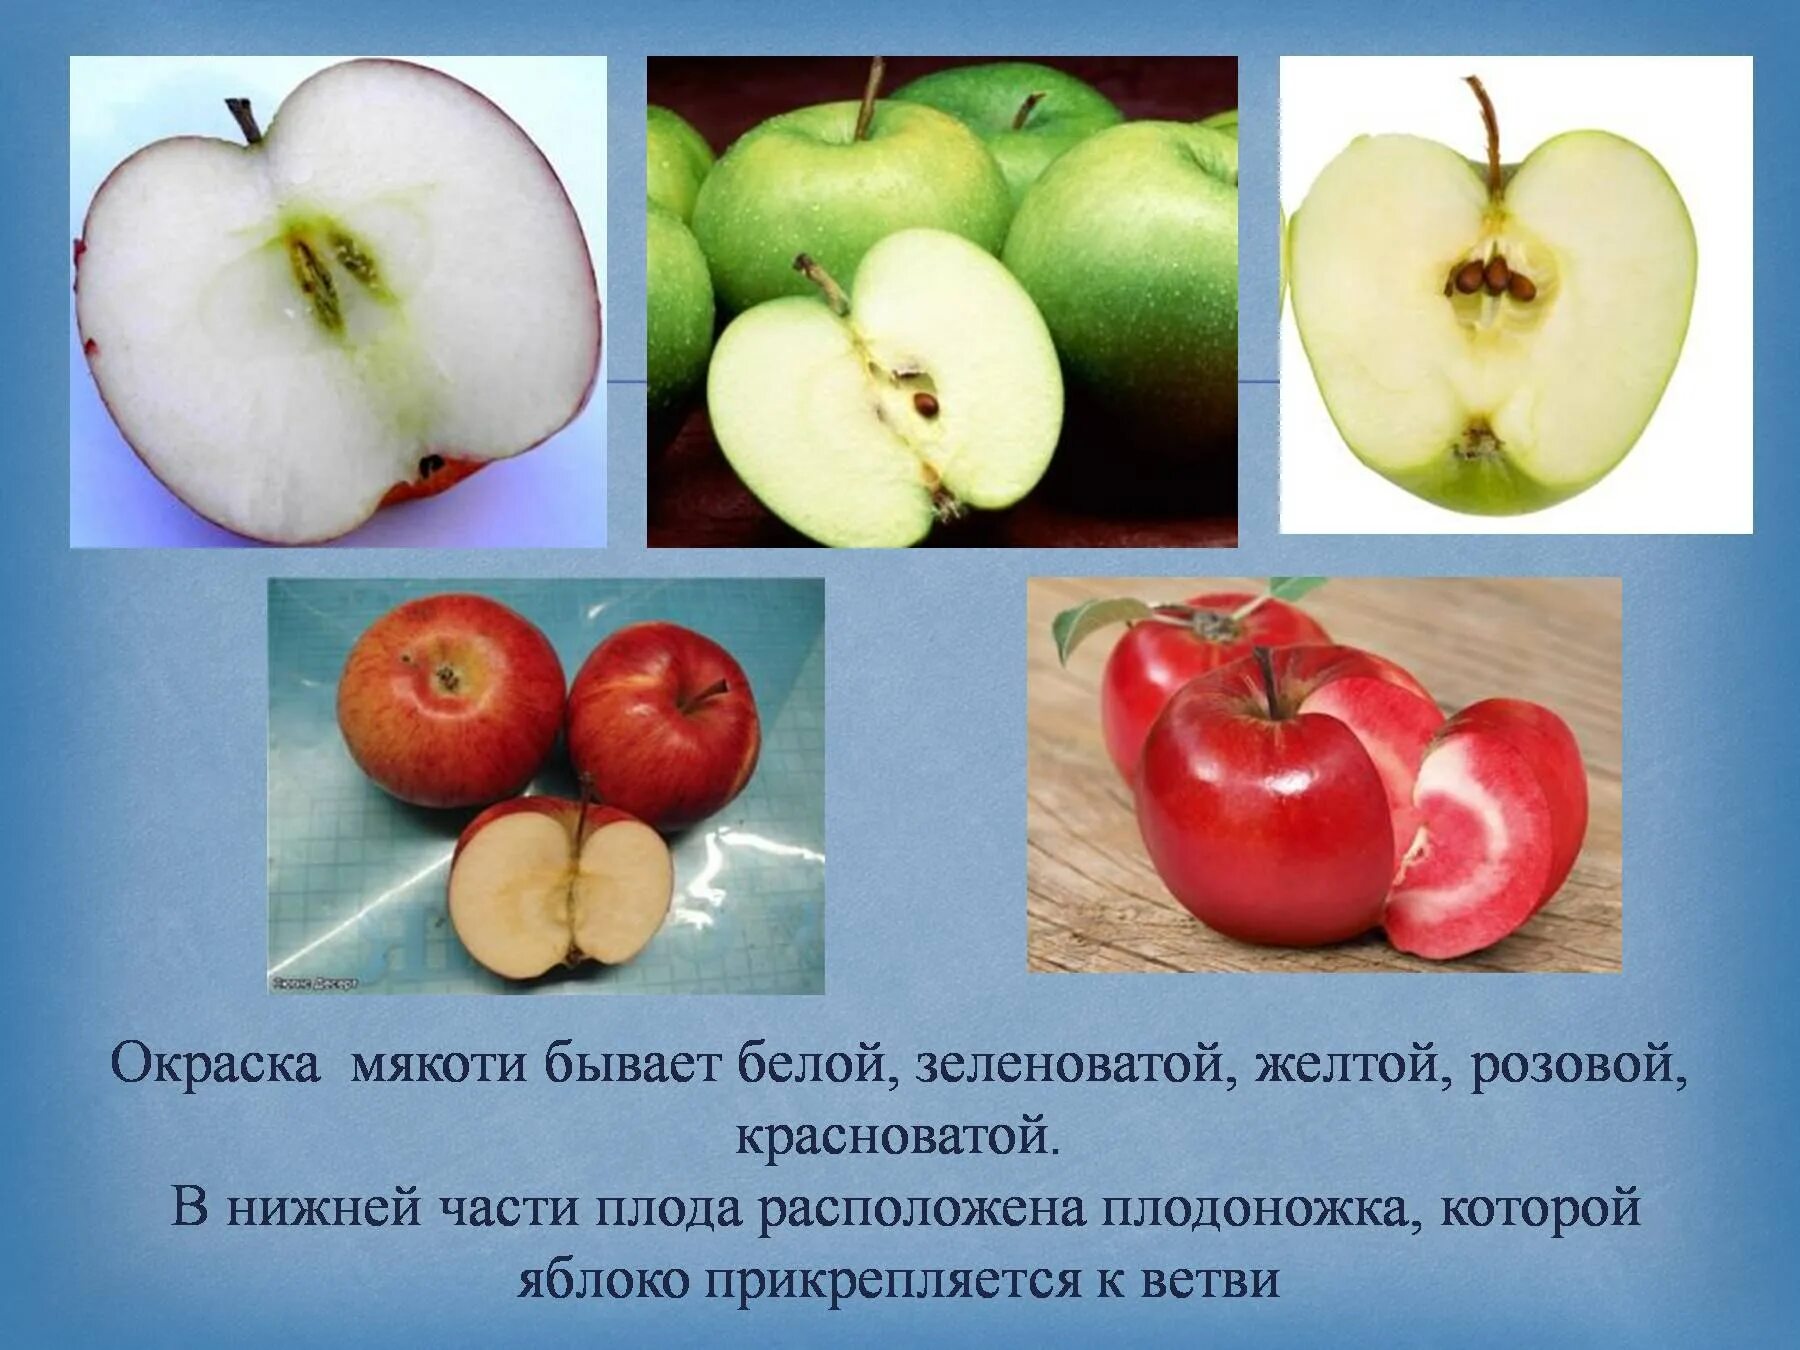 Яблоня распространение. Строение яблока. Строение плода яблока. Части яблока в разрезе. Составные части яблока.